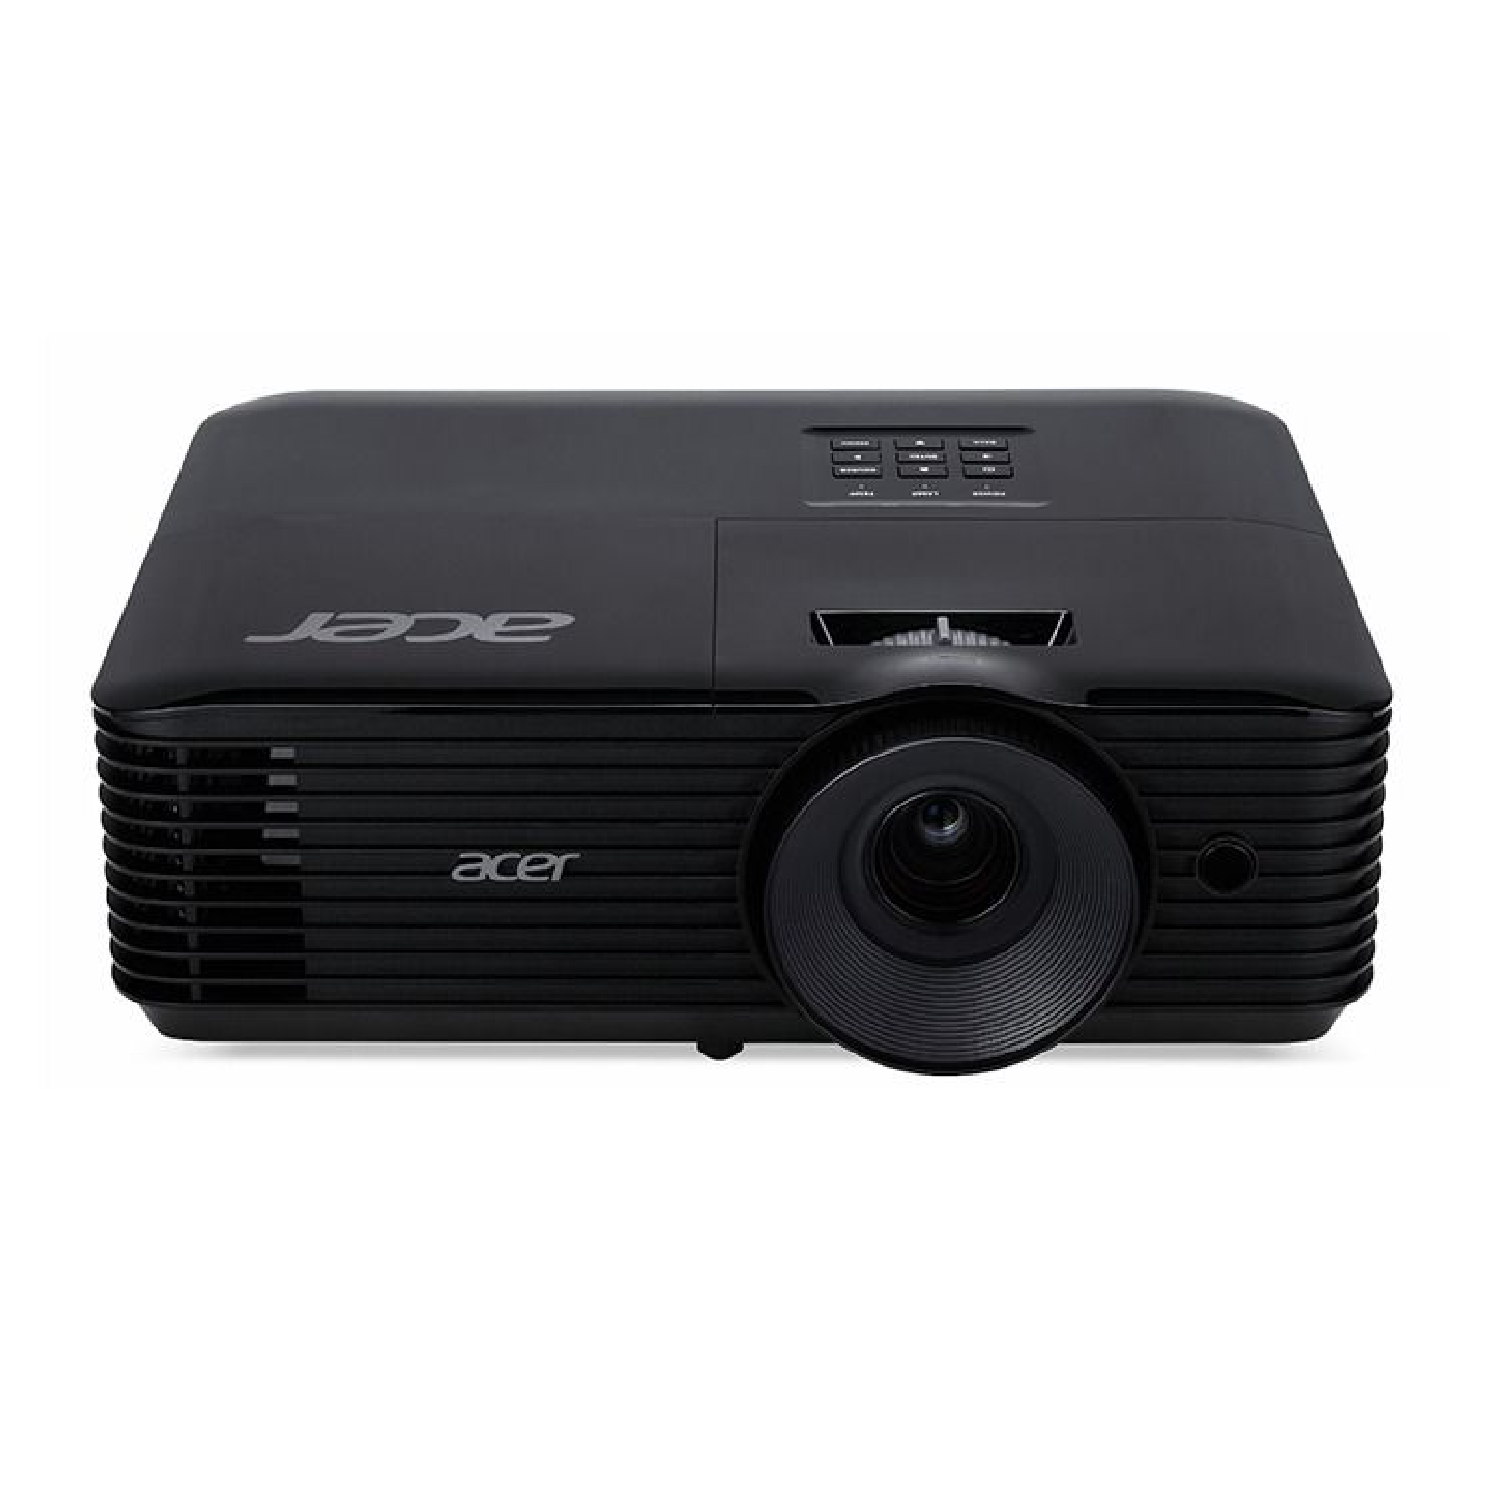 XGA Projector 4000 ANSI Lumens Normal Mode Lamp Life 6000 Hour   X1226AH acer